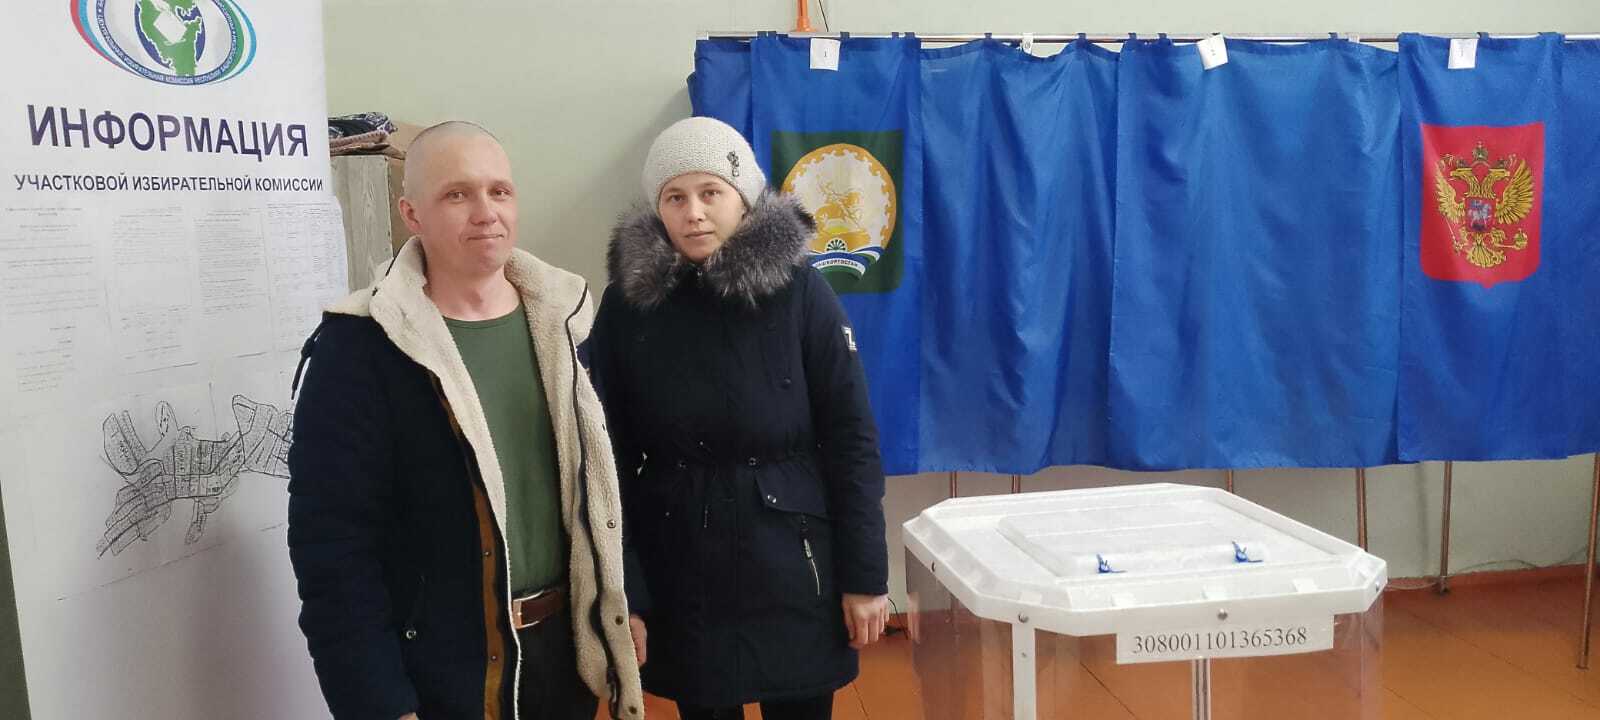 Мечетлинцы приходят голосовать семьями